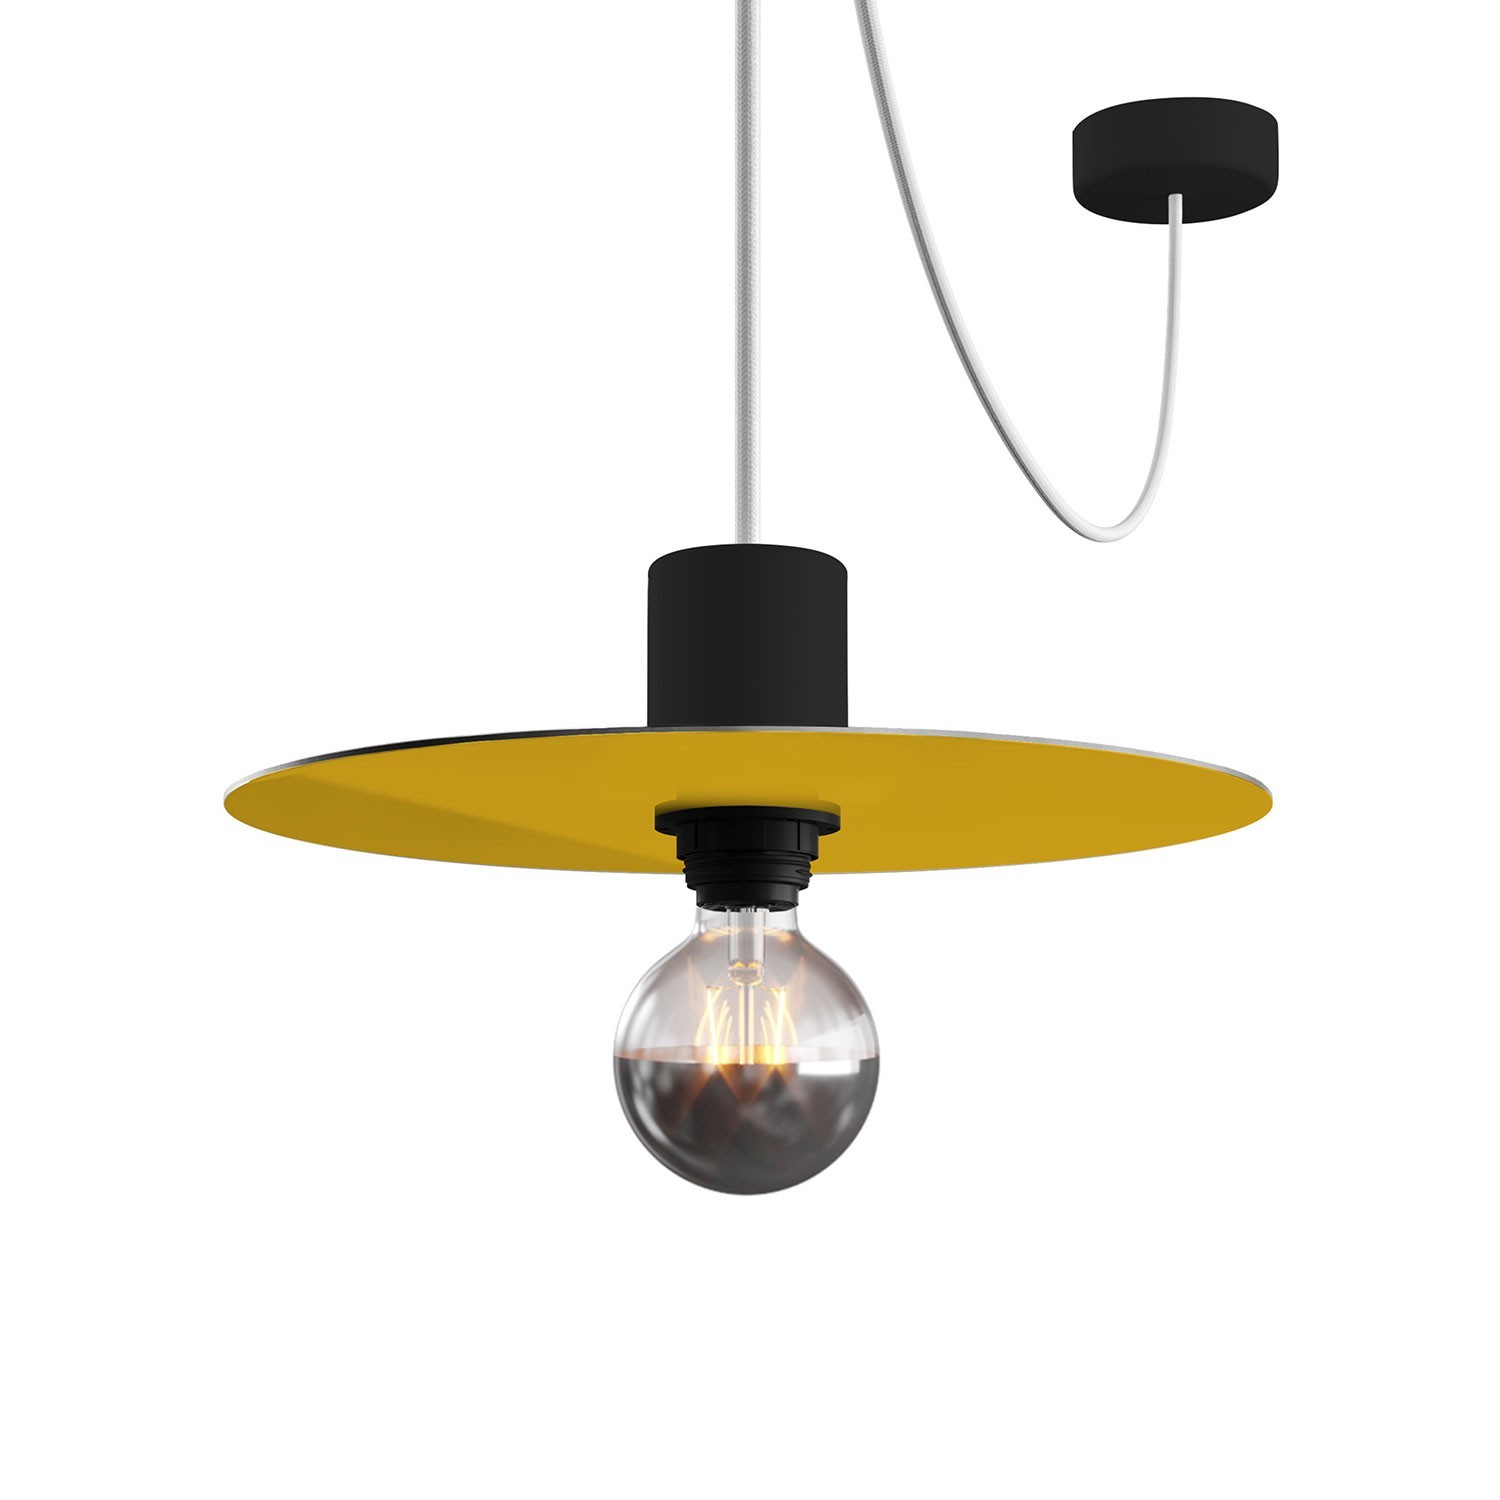 Mini Ellepì 'Egyszínű' lapos lámpabúra, ideális függesztékhez és falikarhoz, vagy fényfüzérekhez, 24 cm átmérőjű - Made in Italy